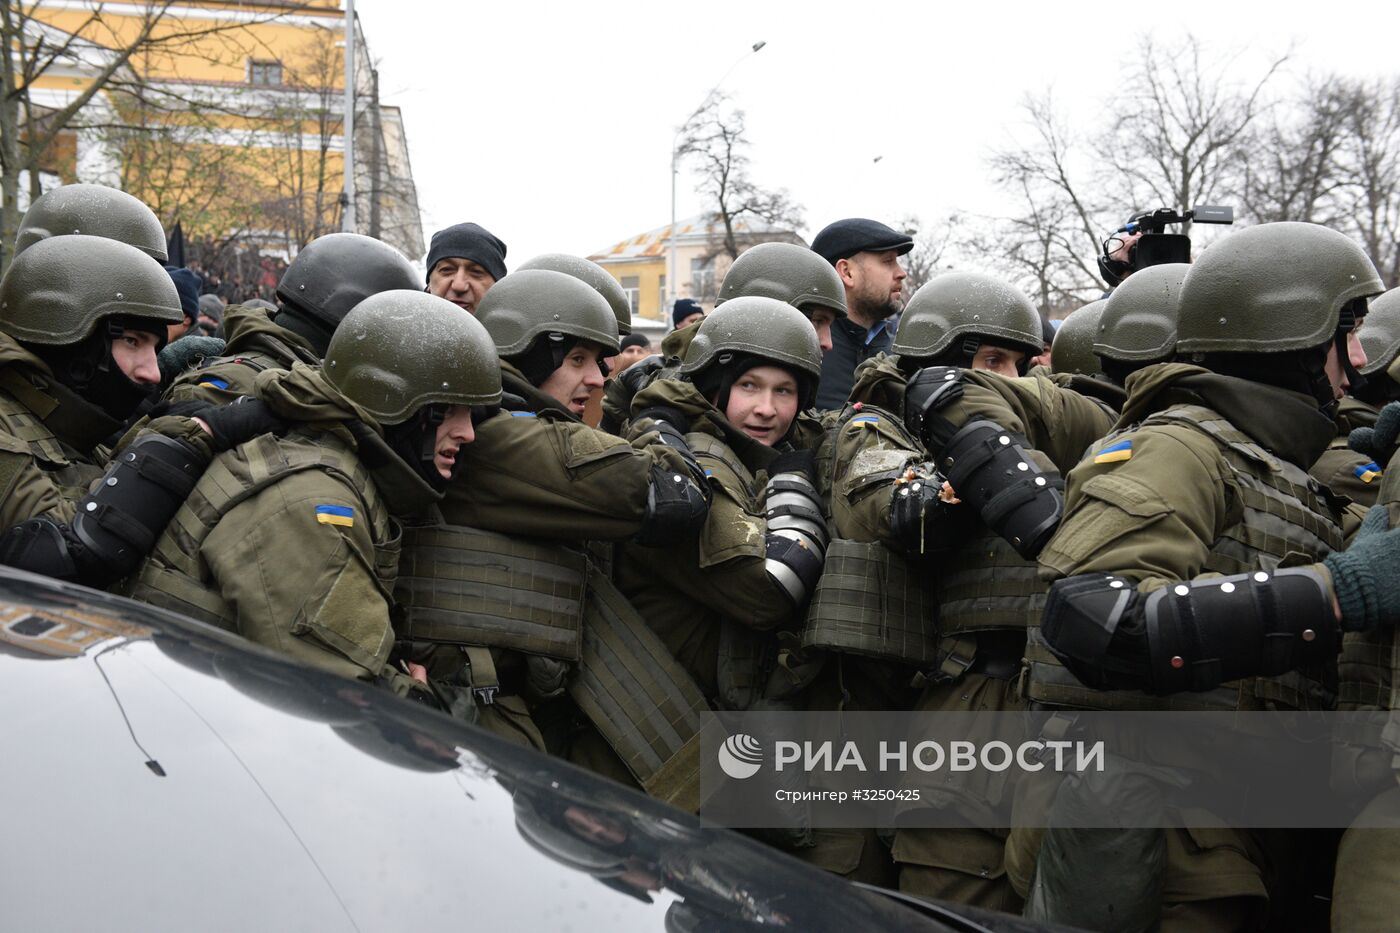 Ситуация в Киеве в связи с задержанием М. Саакашвили